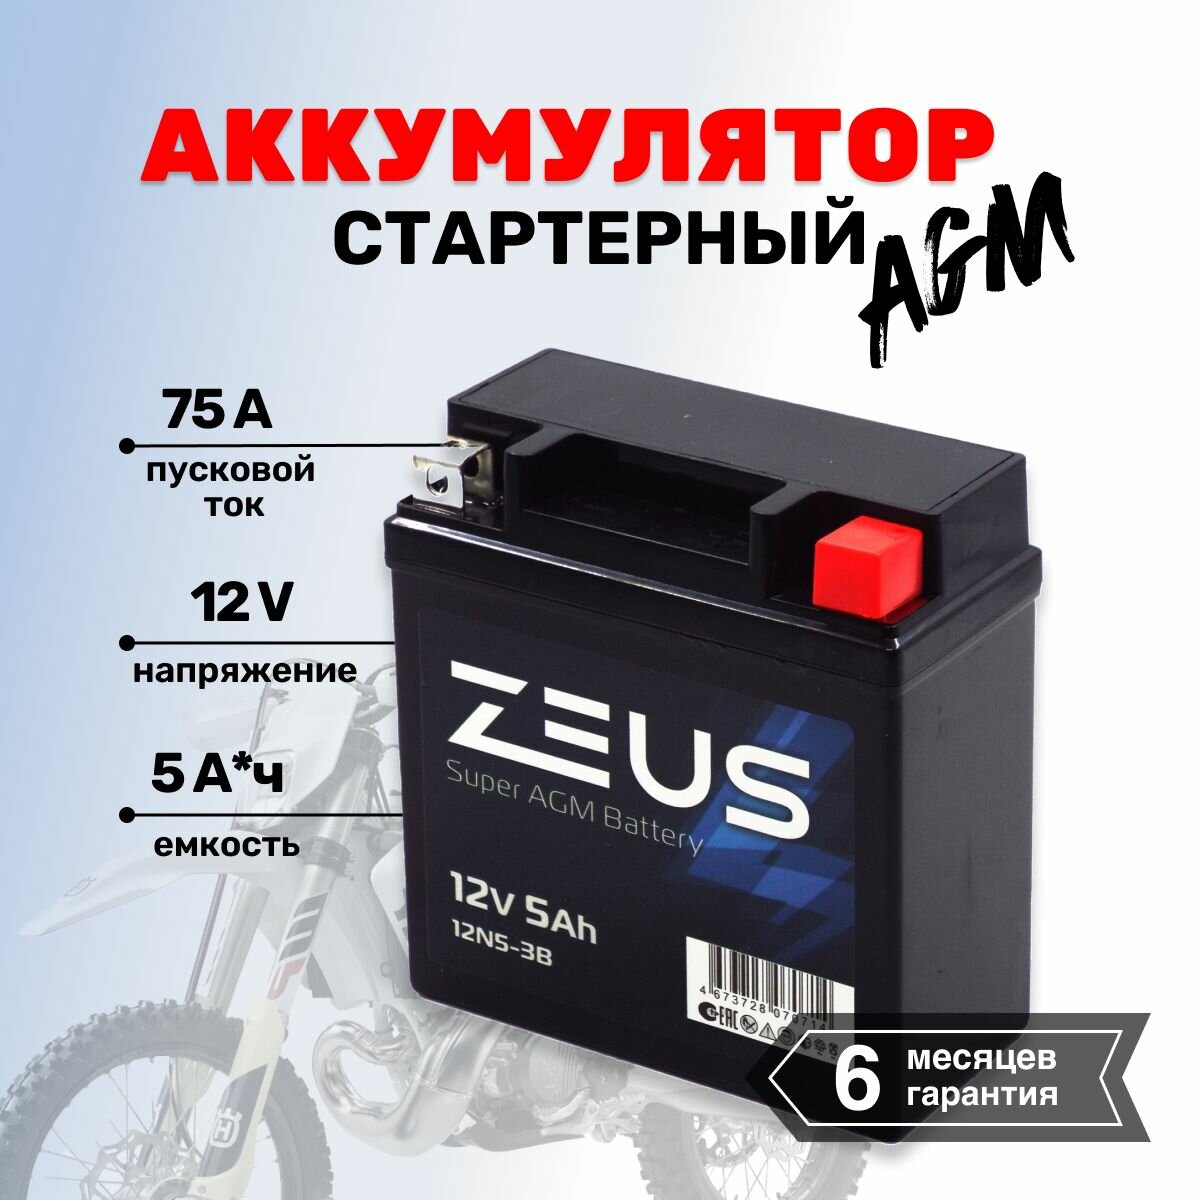 Аккумулятор стартерный гелевый для мотоцикла/квадроцикла/скутера ZEUS SUPER AGM 5 Ач о. п. Обратная полярность (12N5-3B)